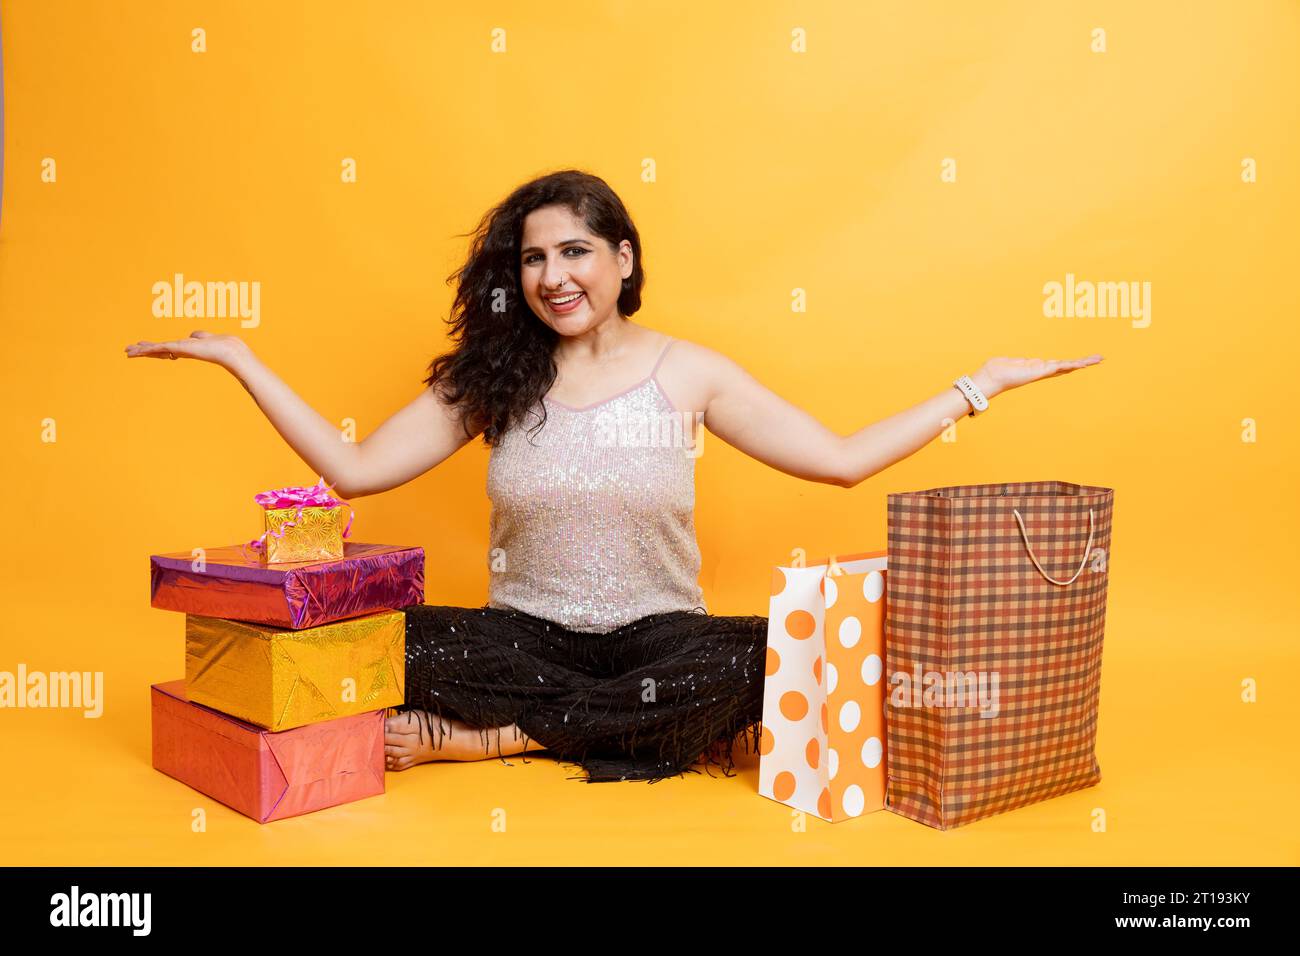 Portrait d'une femme indienne asiatique excitée assise sur le sol avec des sacs à provisions et une boîte cadeau isolée sur fond orange, concept Shopper ou shopaholic Banque D'Images